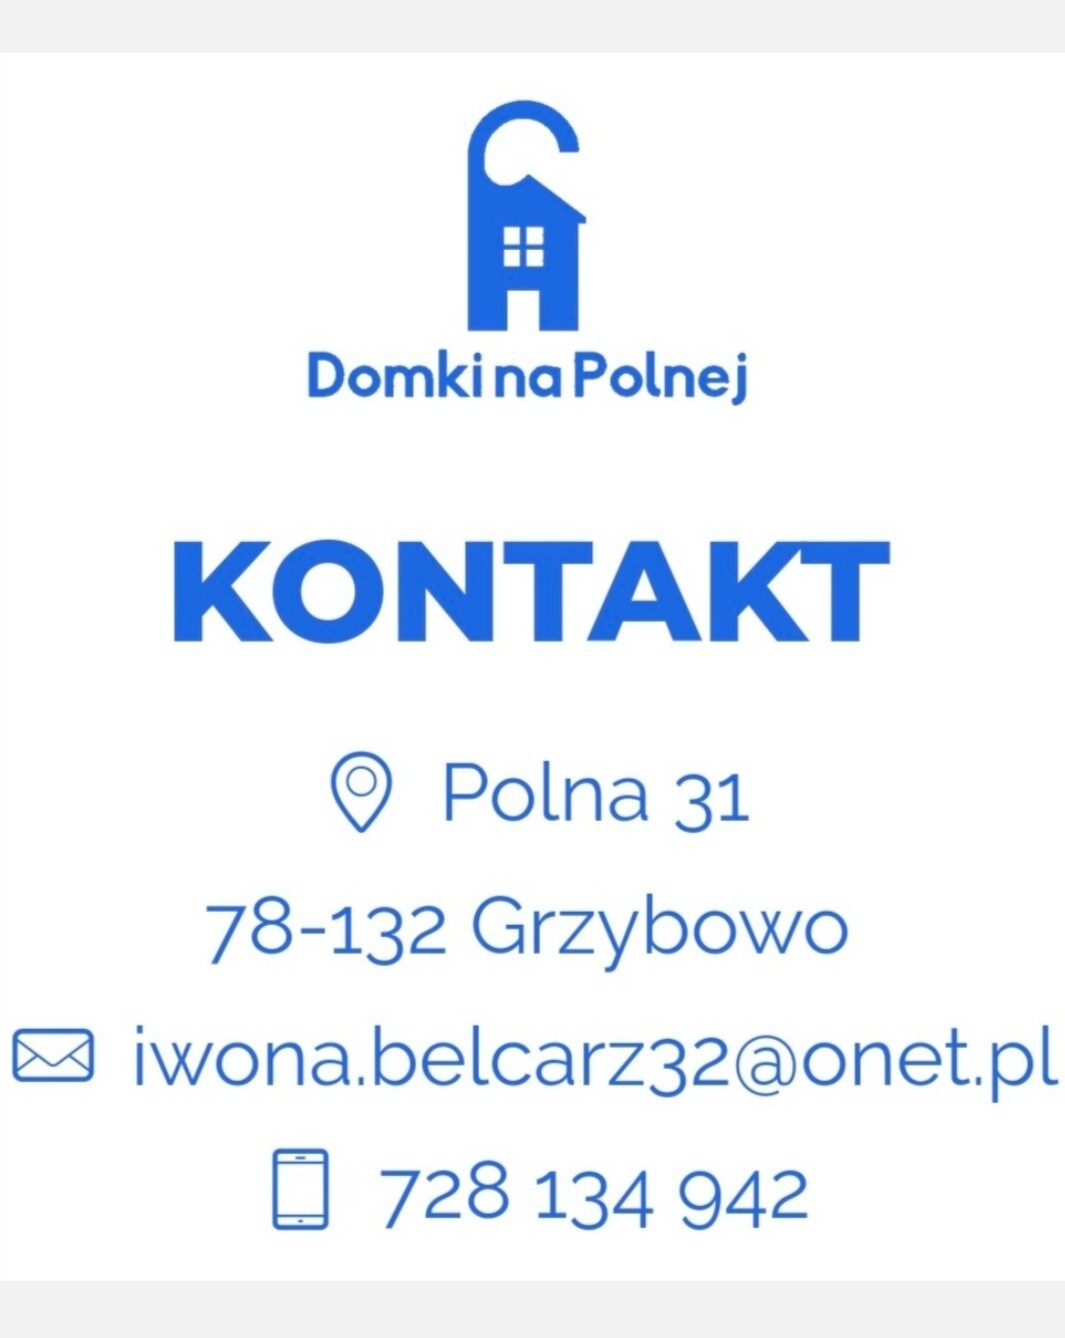 Polna公寓1号小屋